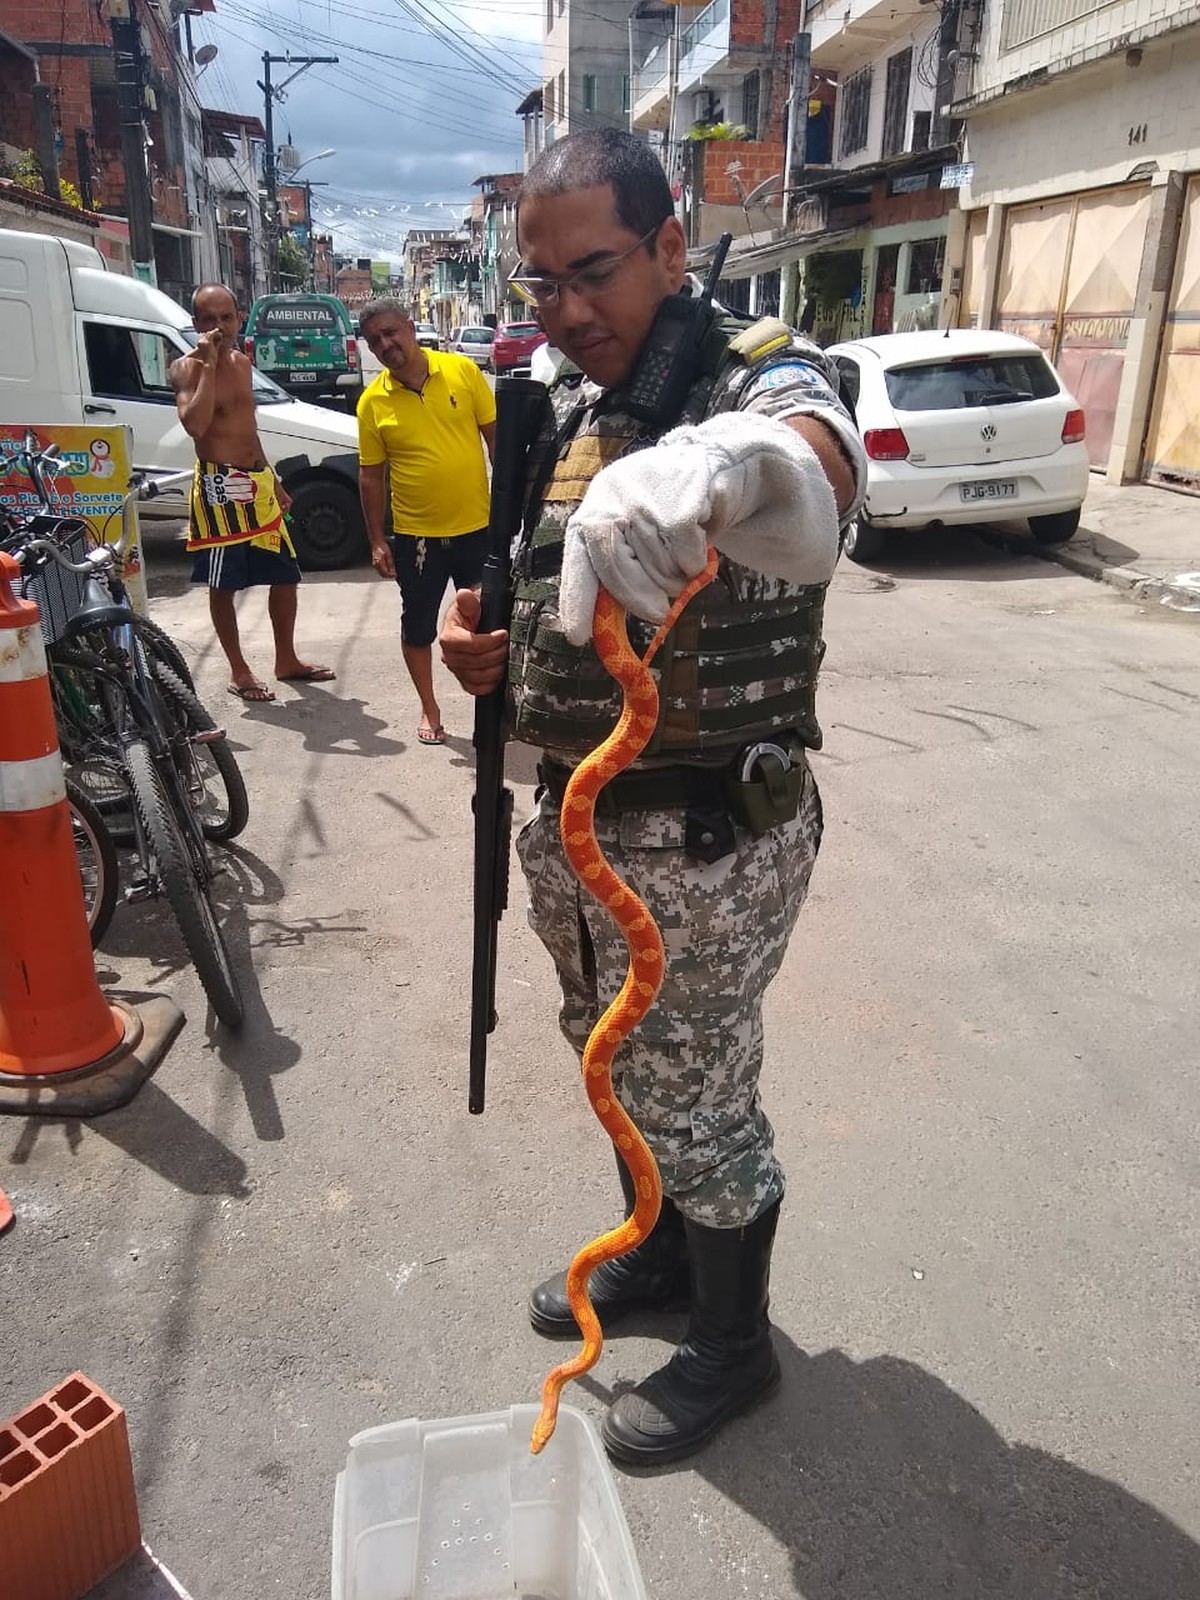 Onde estão as serpentes brasileiras : Revista Pesquisa Fapesp